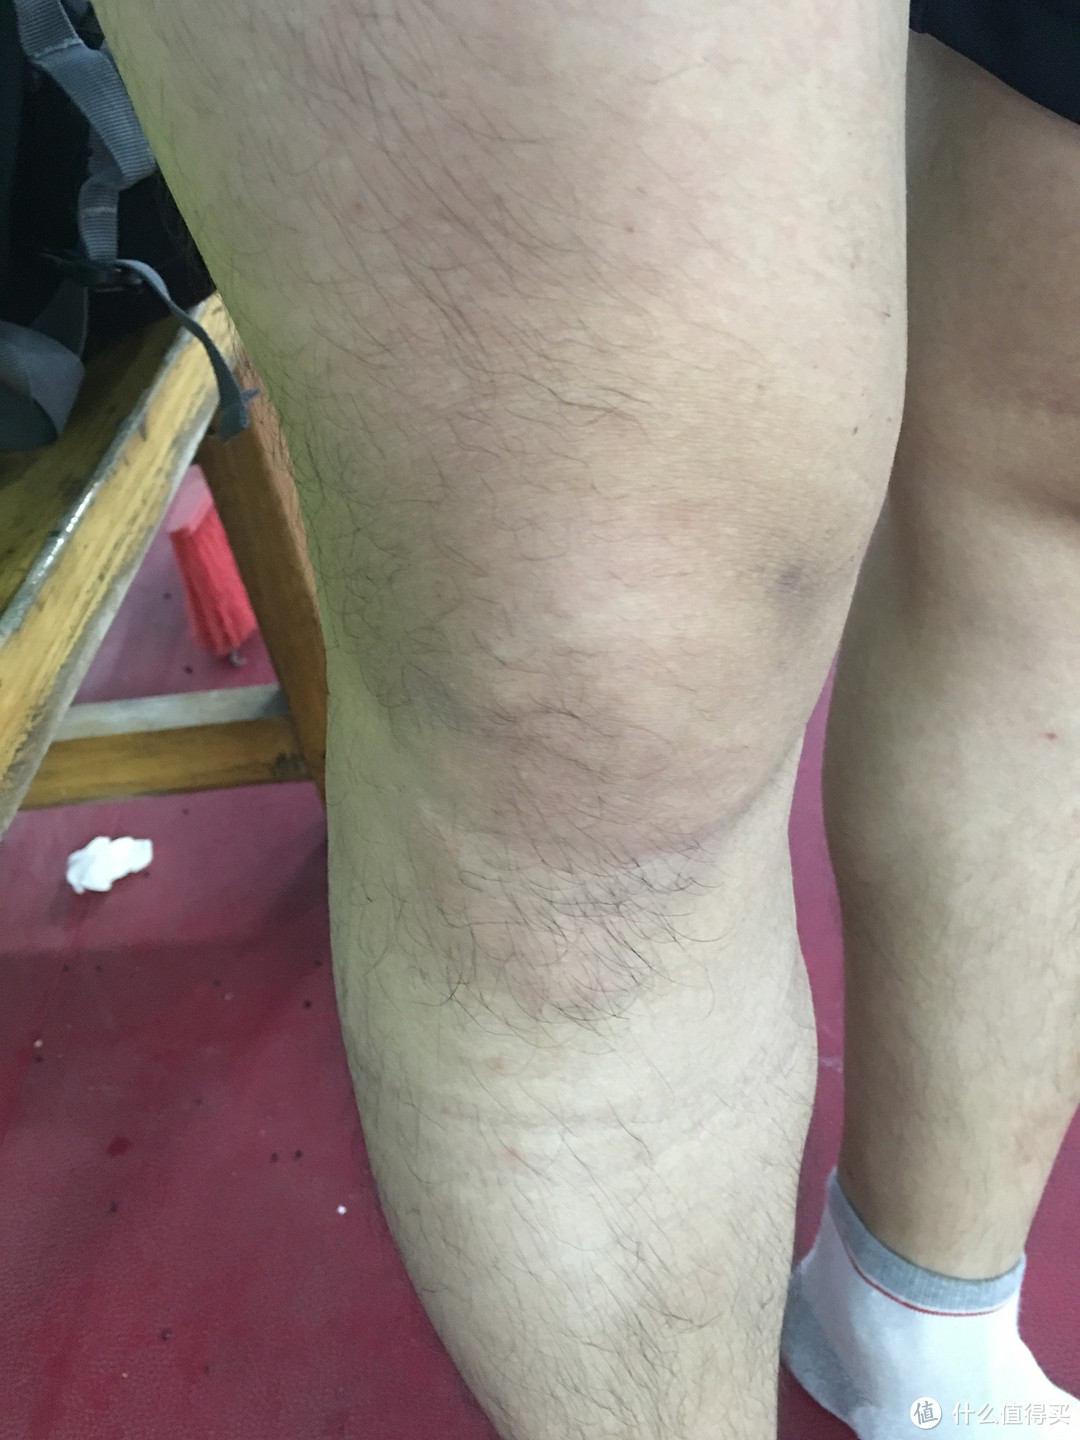 伤了膝盖之后，你需要一副好的护膝：Mueller 慕乐 Hg80 护膝